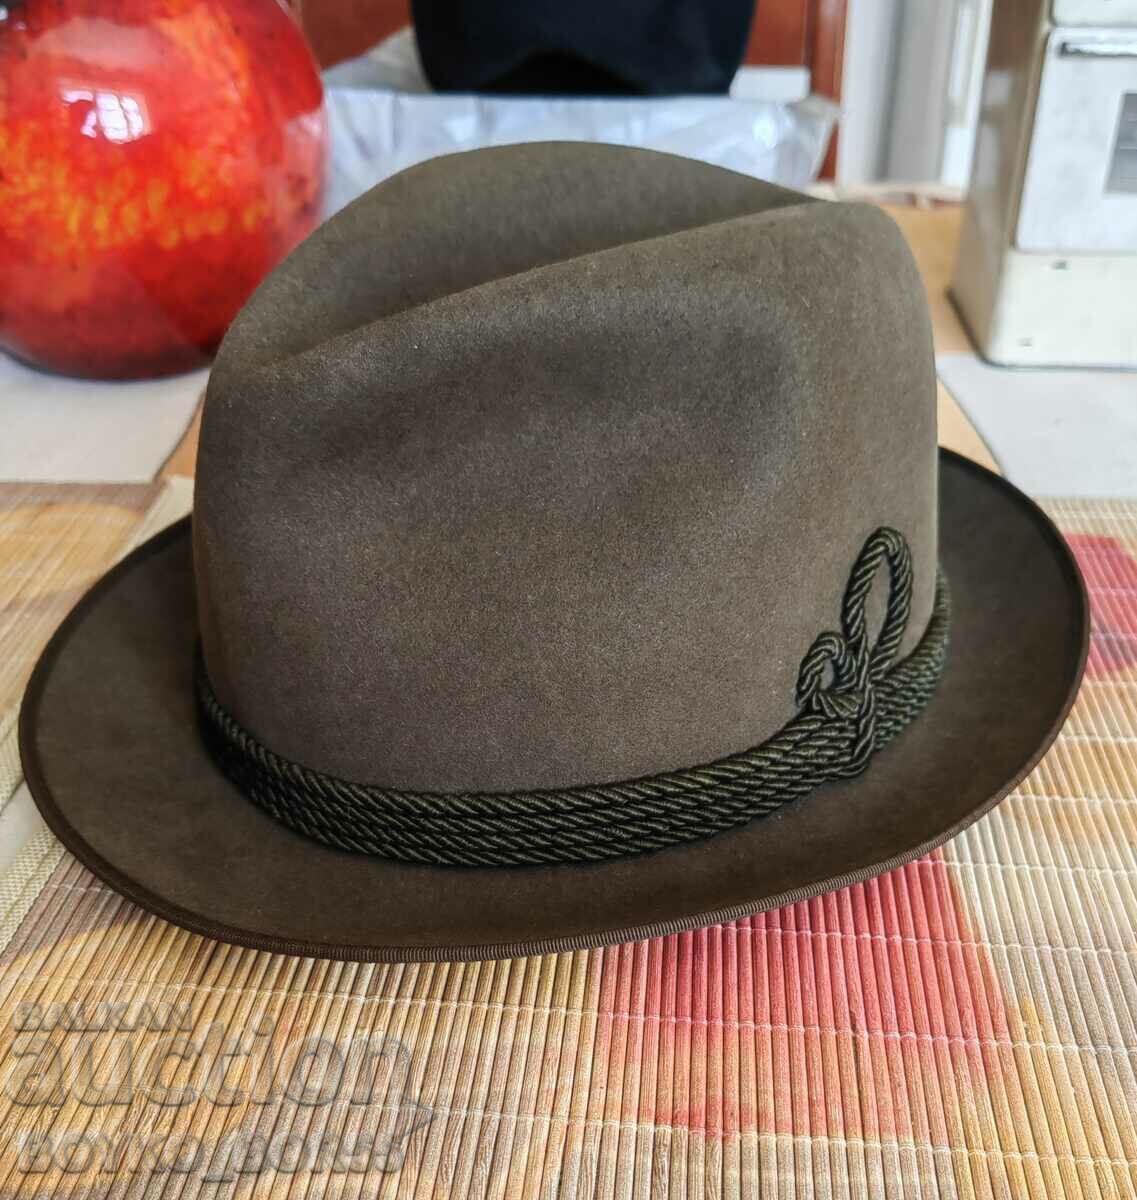 Καπέλο περιπατητή vintage πολυτελείας γερμανικής τσόχας